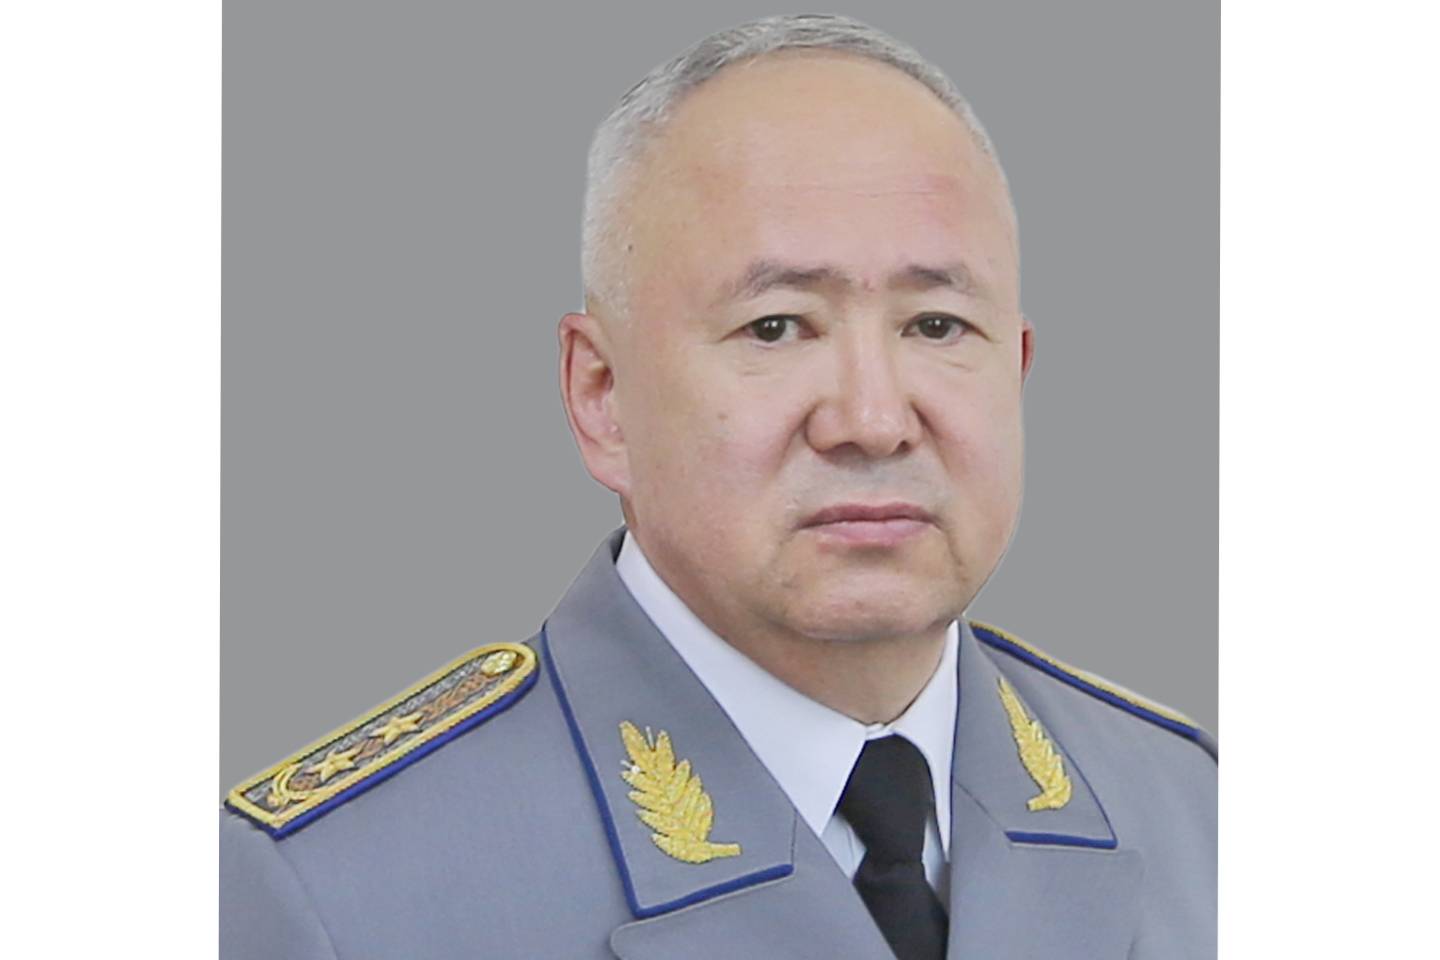 Происшествия в Казахстане и мире / Криминальные новости / В Казахстане арестовали бывшего зампредседателя КНБ